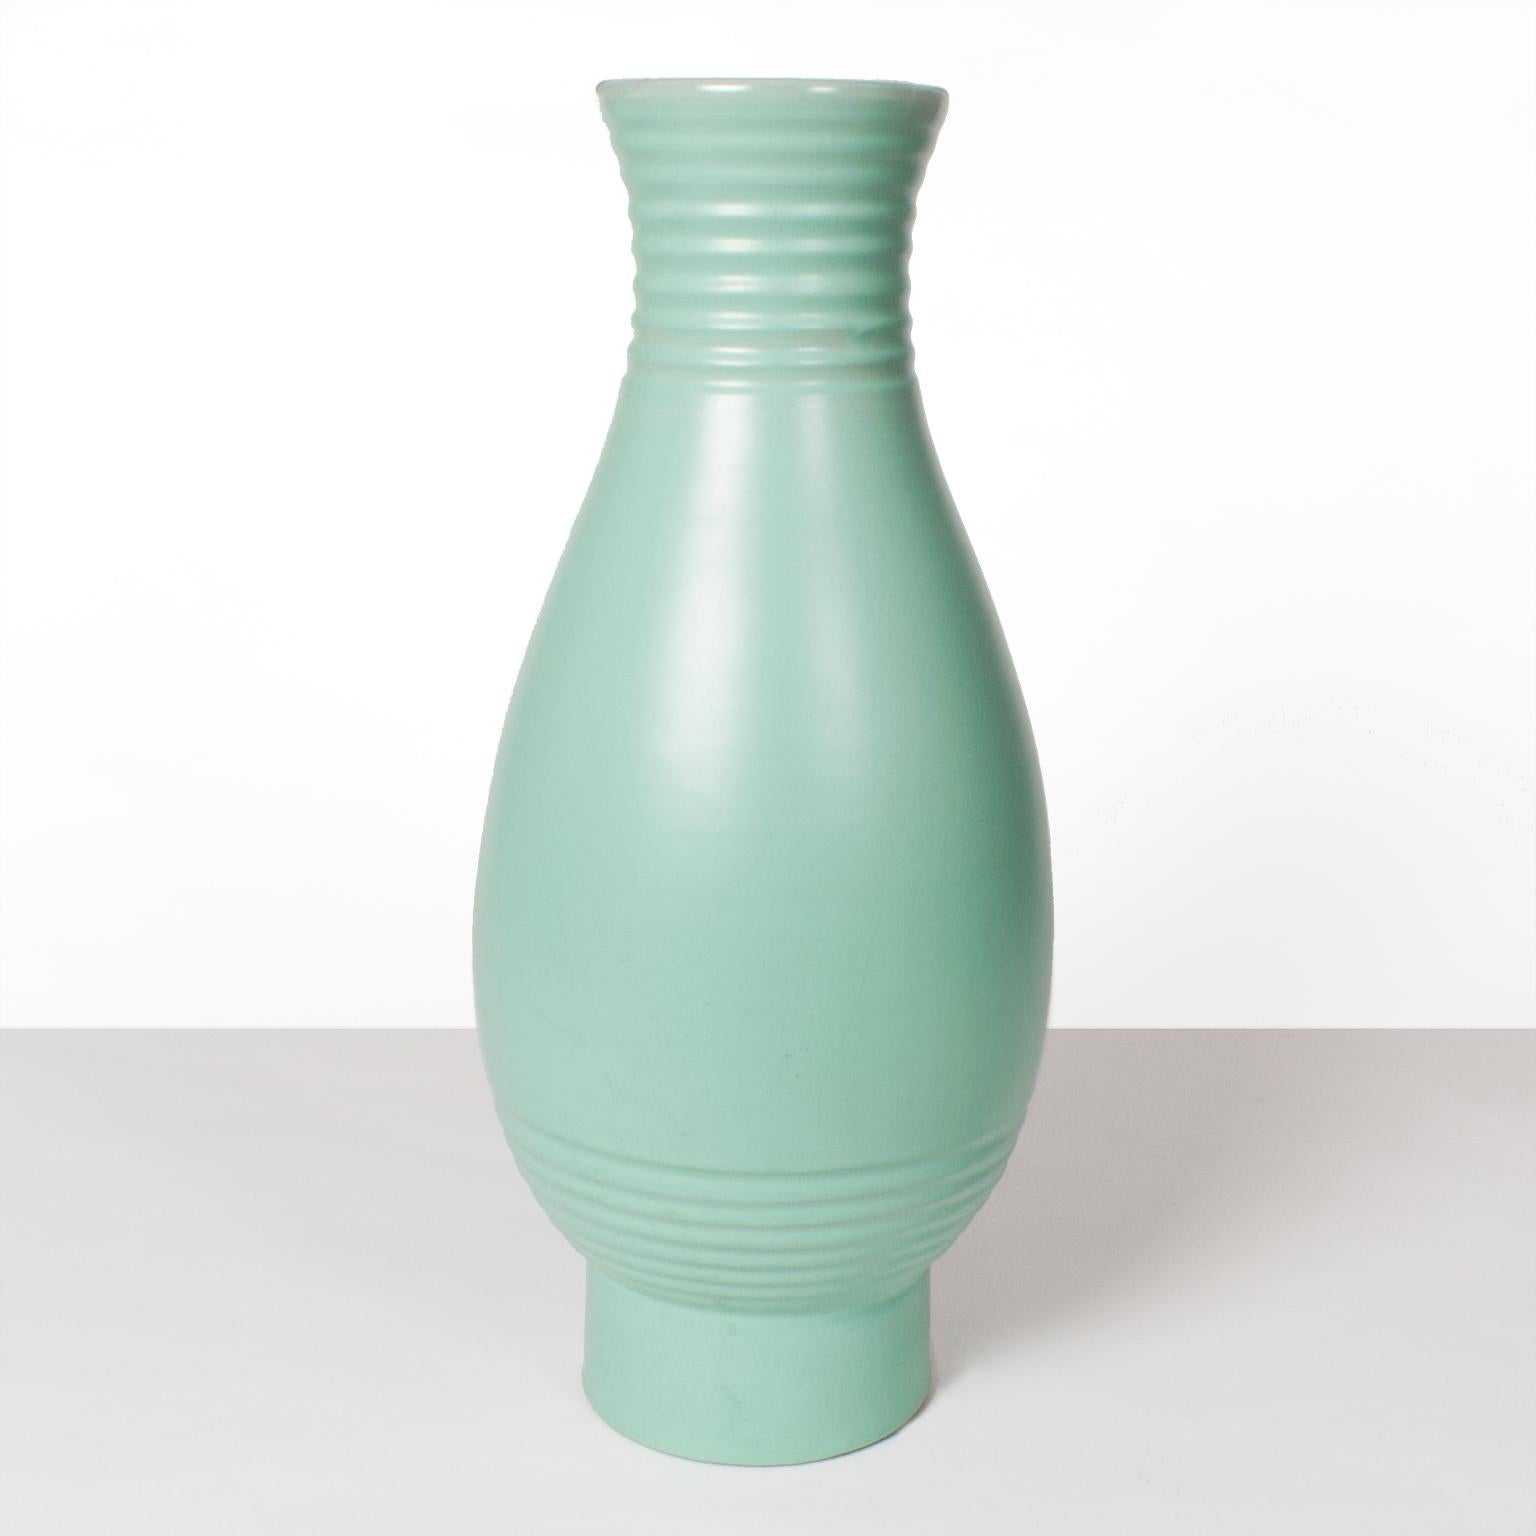 Modern Scandinavian, vase art déco suédois par l'artiste Ewald Dahlskog dans une glaçure verte douce produite à Bo Fajans.
 
Dimensions : 19